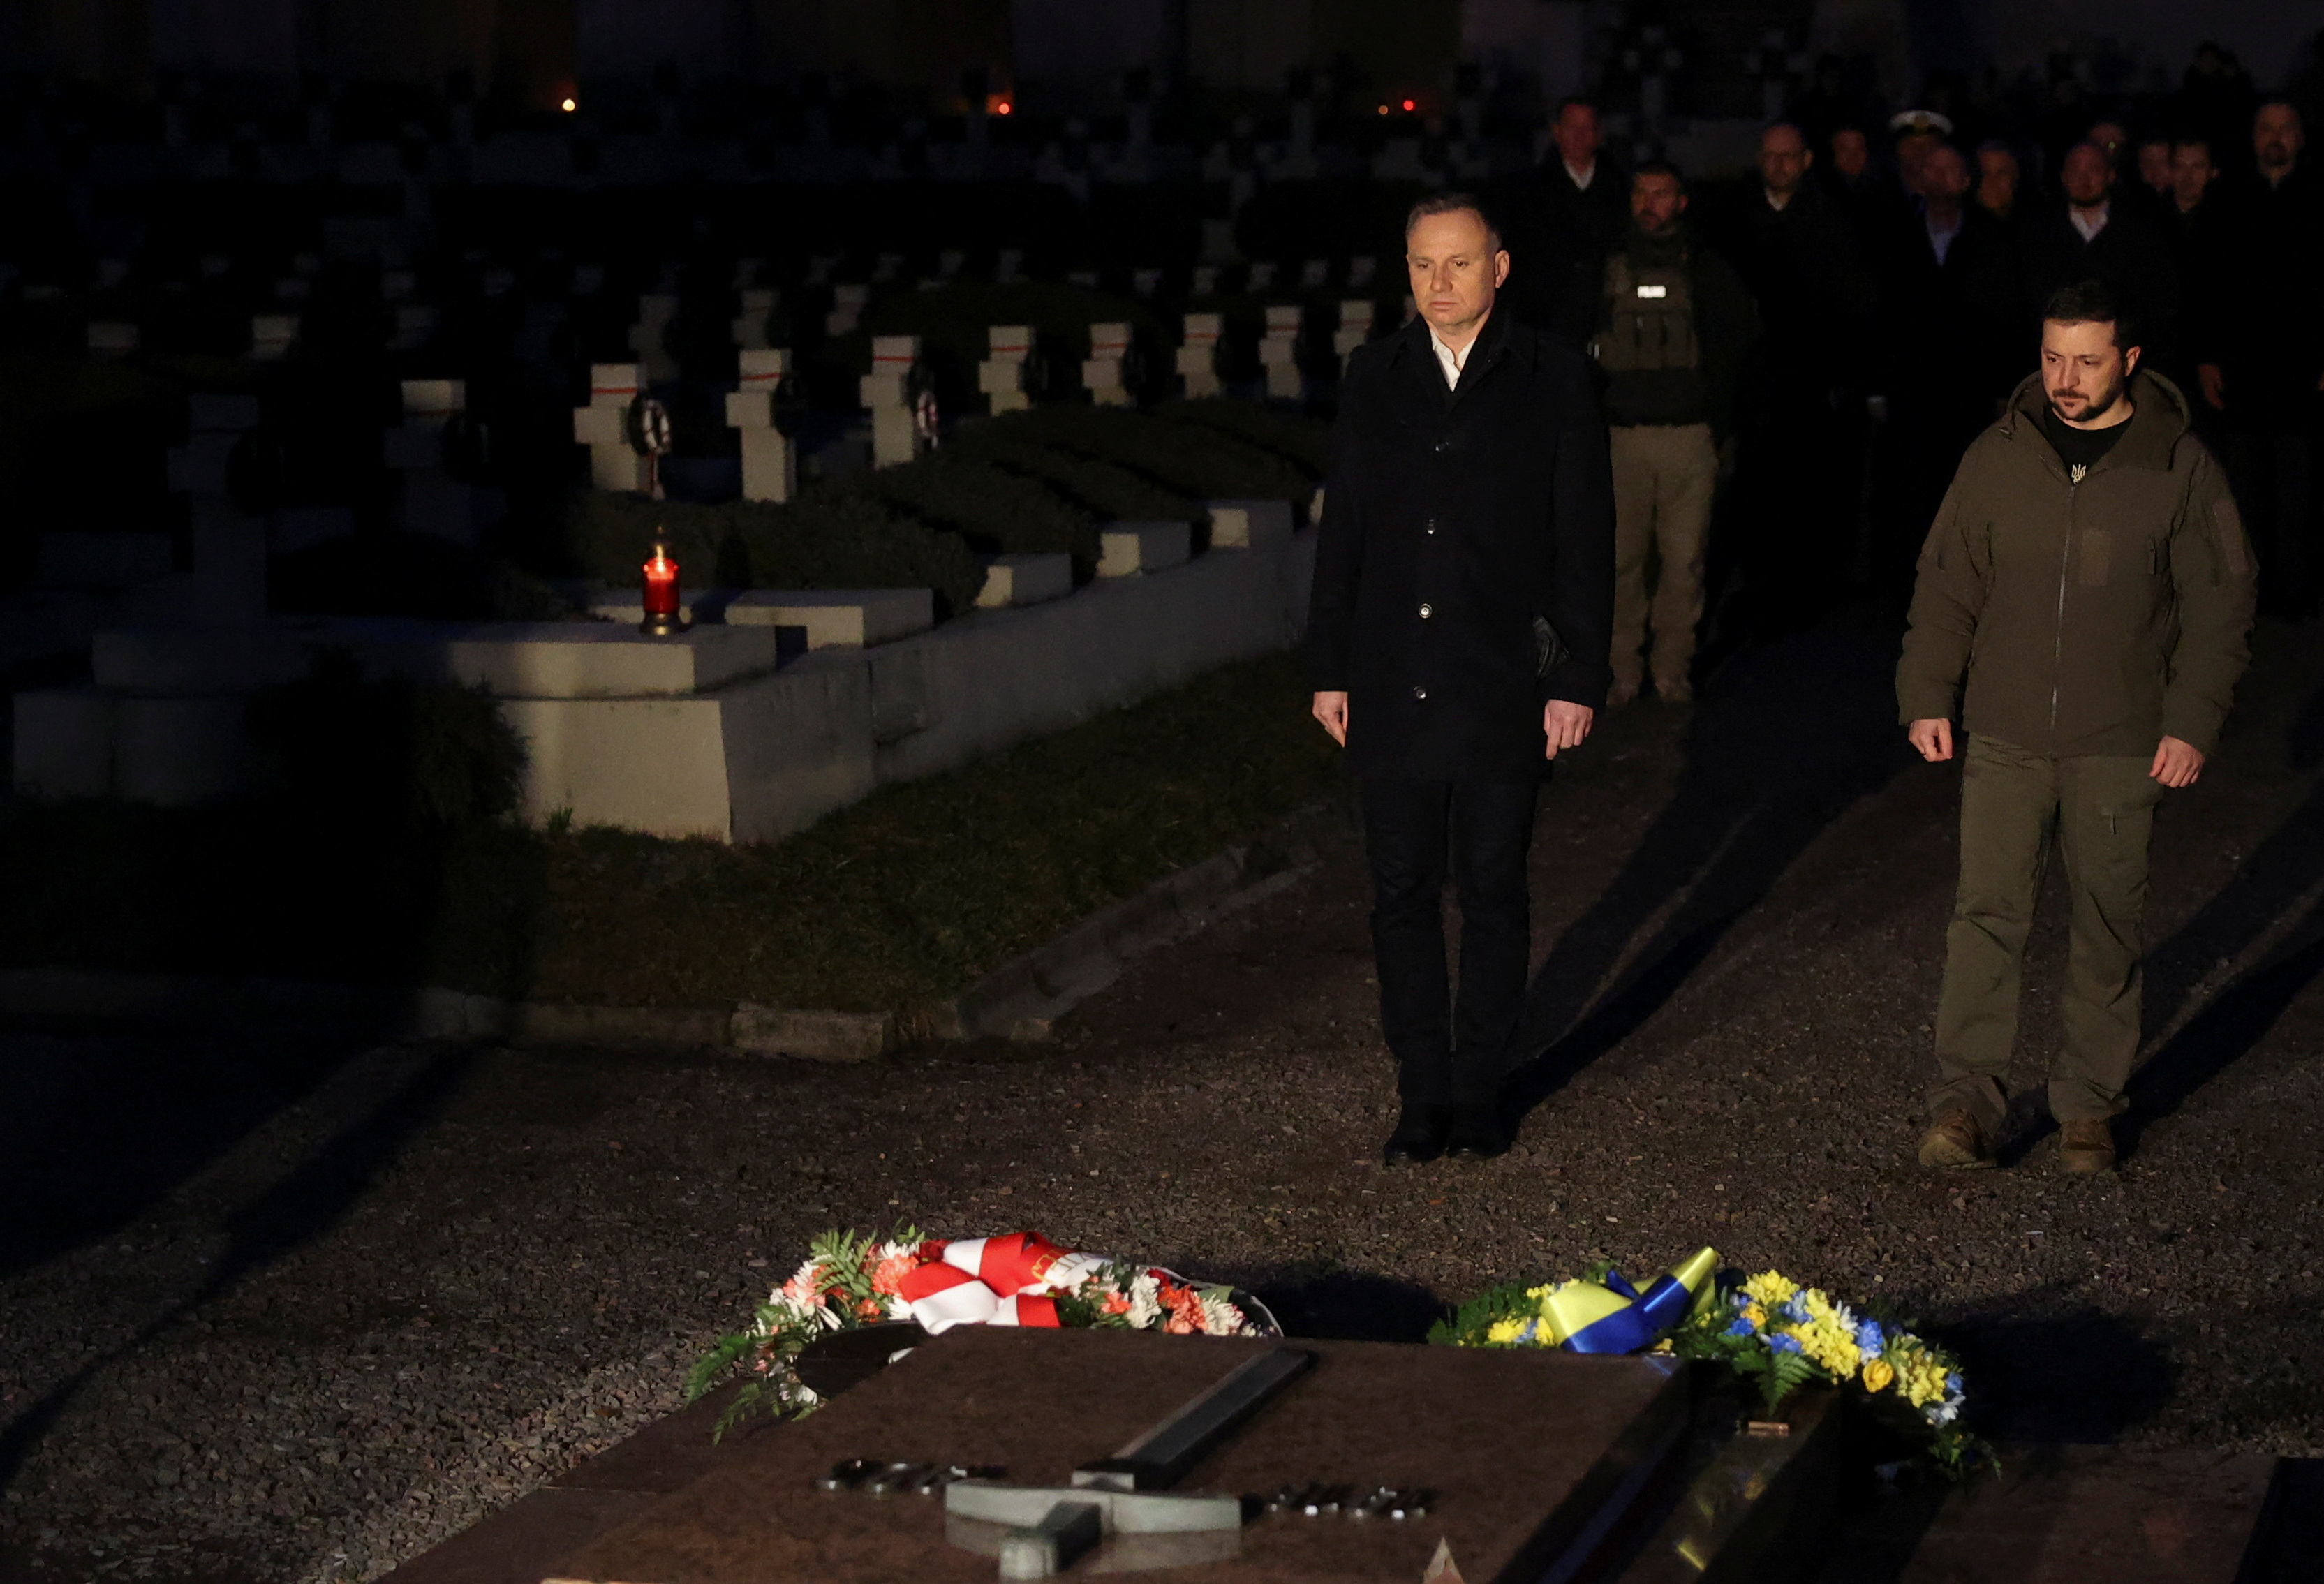 El presidente de Polonia, Andrzej Duda, y el presidente de Ucrania, Volodimir Zelensky, conmemoran a los defensores ucranianos caídos en un cementerio, en medio del ataque de Rusia a Ucrania, en Lviv, Ucrania, 11 de enero de 2023.  REUTERS/Roman Baluk